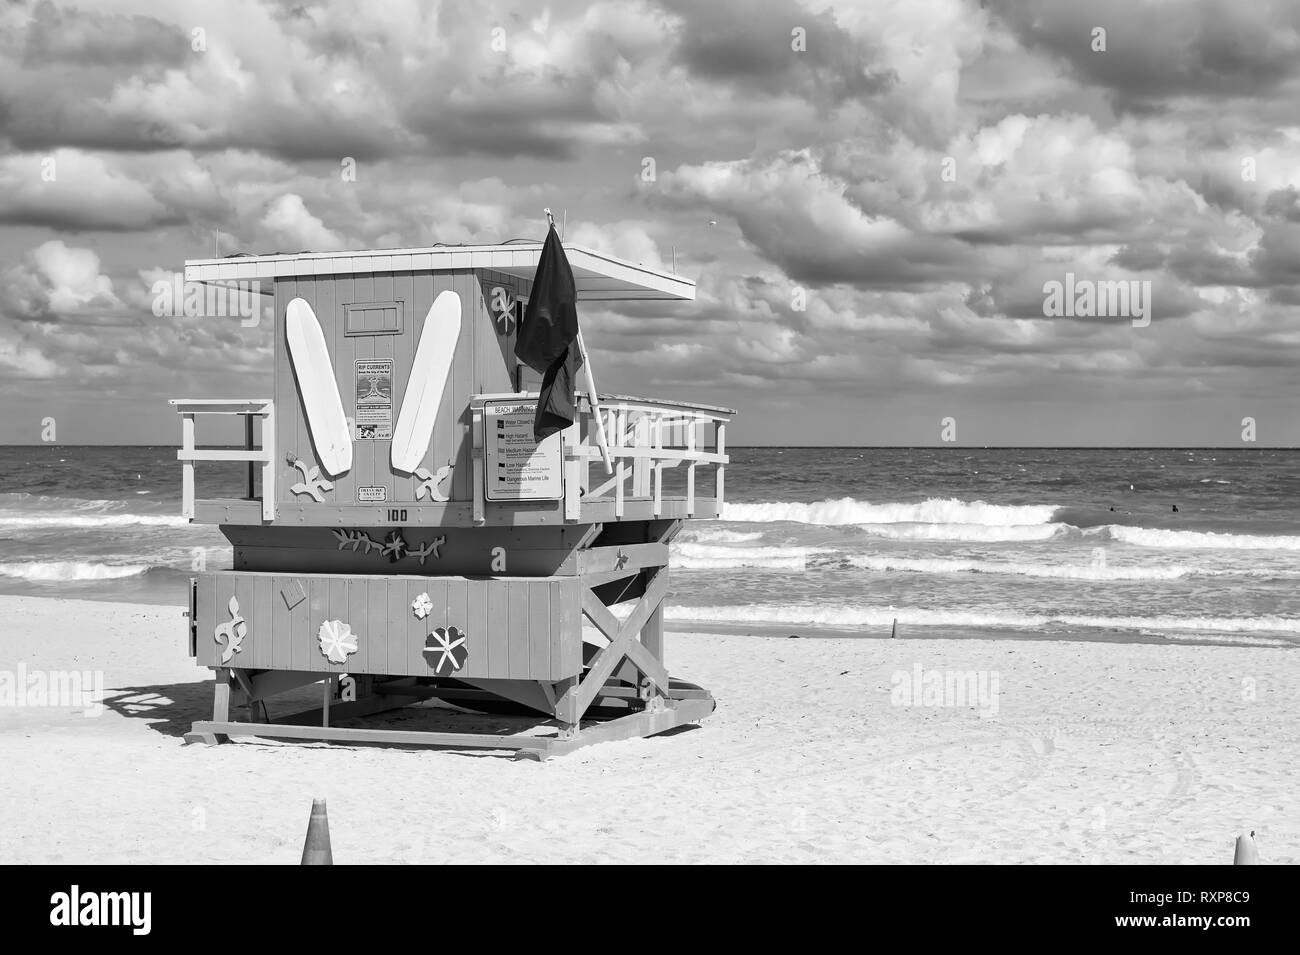 South Beach, Miami, Floride, lifeguard chambre dans un décor de style Art déco sur nuageux ciel bleu et l'océan Atlantique en arrière-plan, célèbre lieu de voyage Banque D'Images